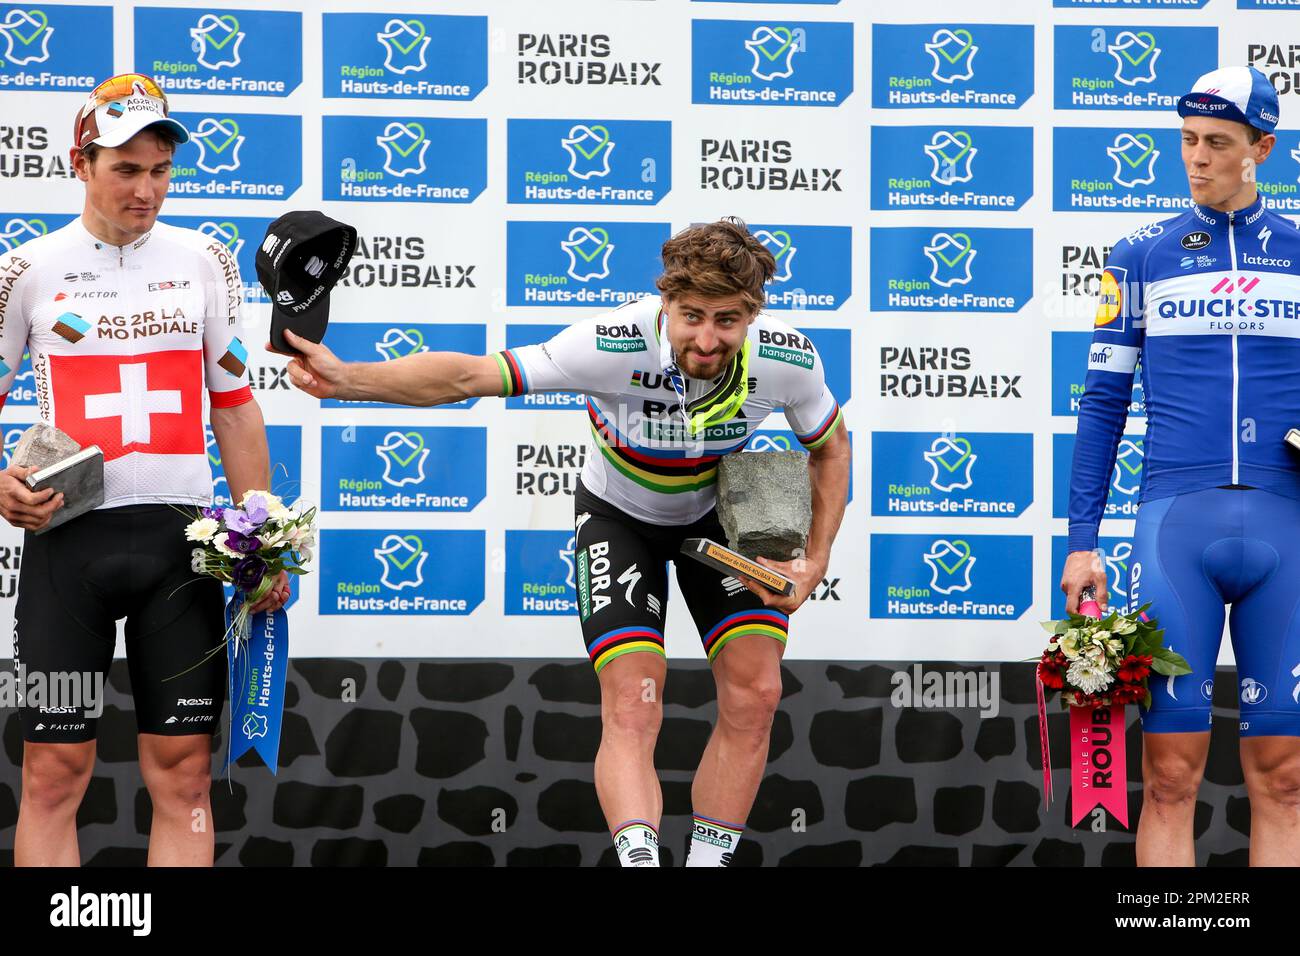 2018 Paris Roubaix 165. Auflage – Weltmeister Peter Sagan (Bora Hansgrohe) verbeugt sich mit seiner Kopfsteinpflastertrophäe, um Paris Roubaix zu gewinnen Stockfoto